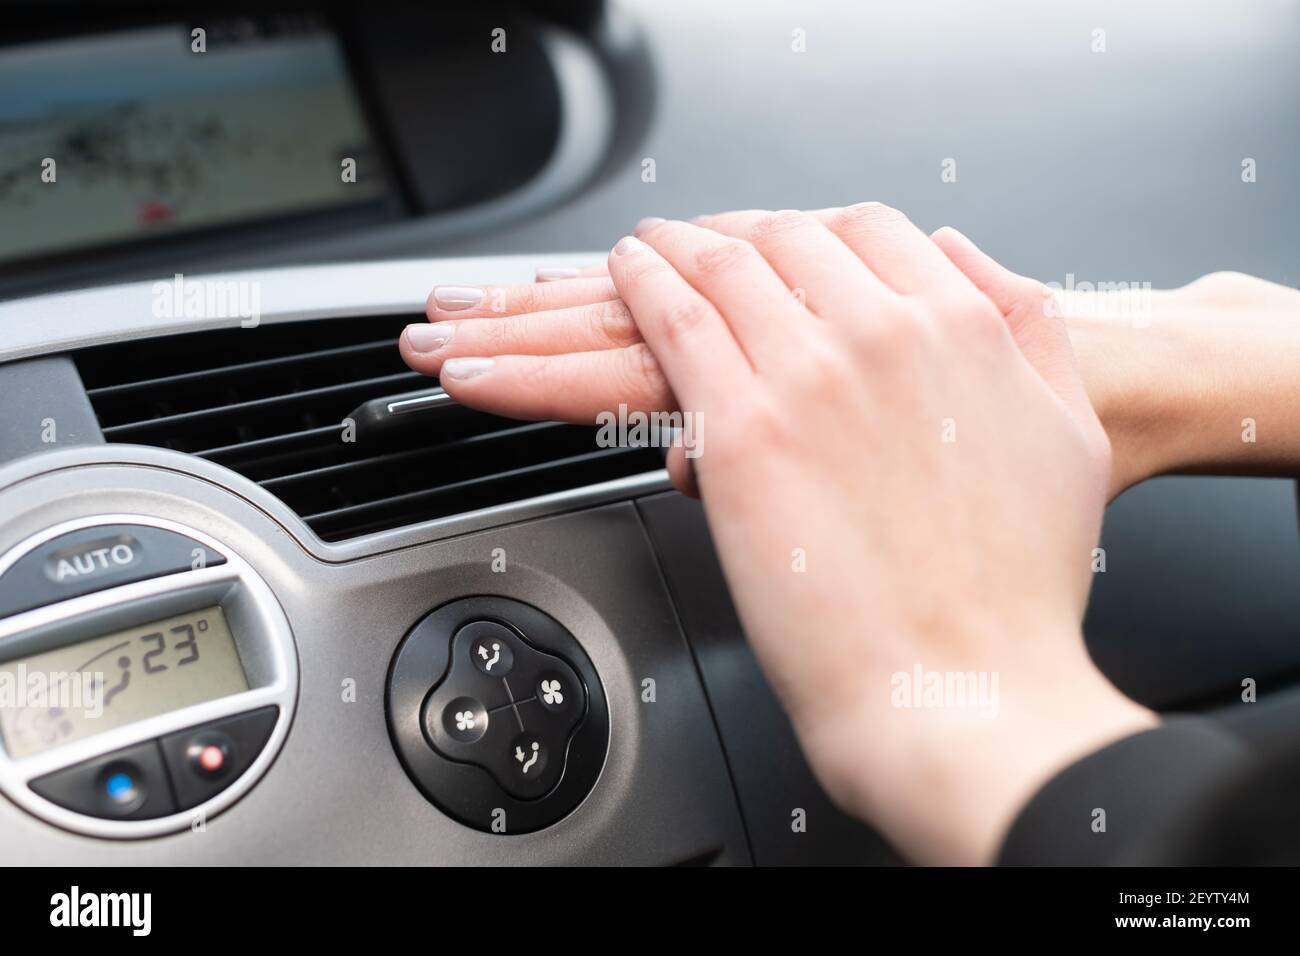 Das Mädchen hält ihre Hände kalt über eine Autoheizung. Heiße Luft  Stockfotografie - Alamy